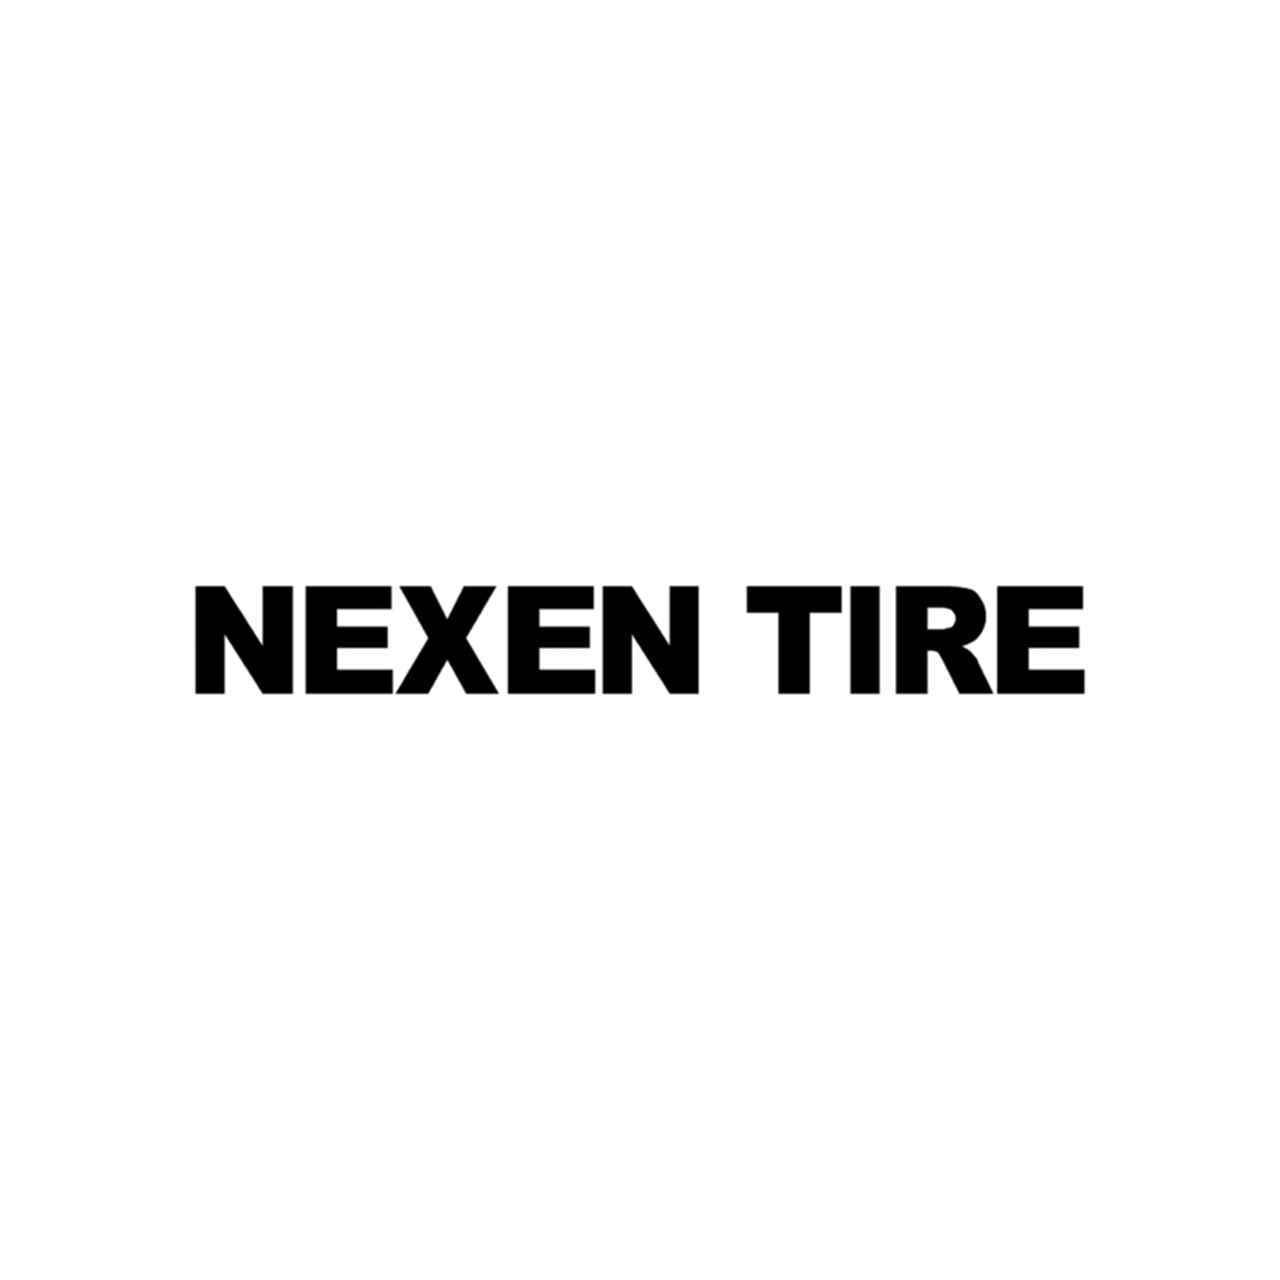 Nexen Logo - Nexen Tire Vinyl Decal